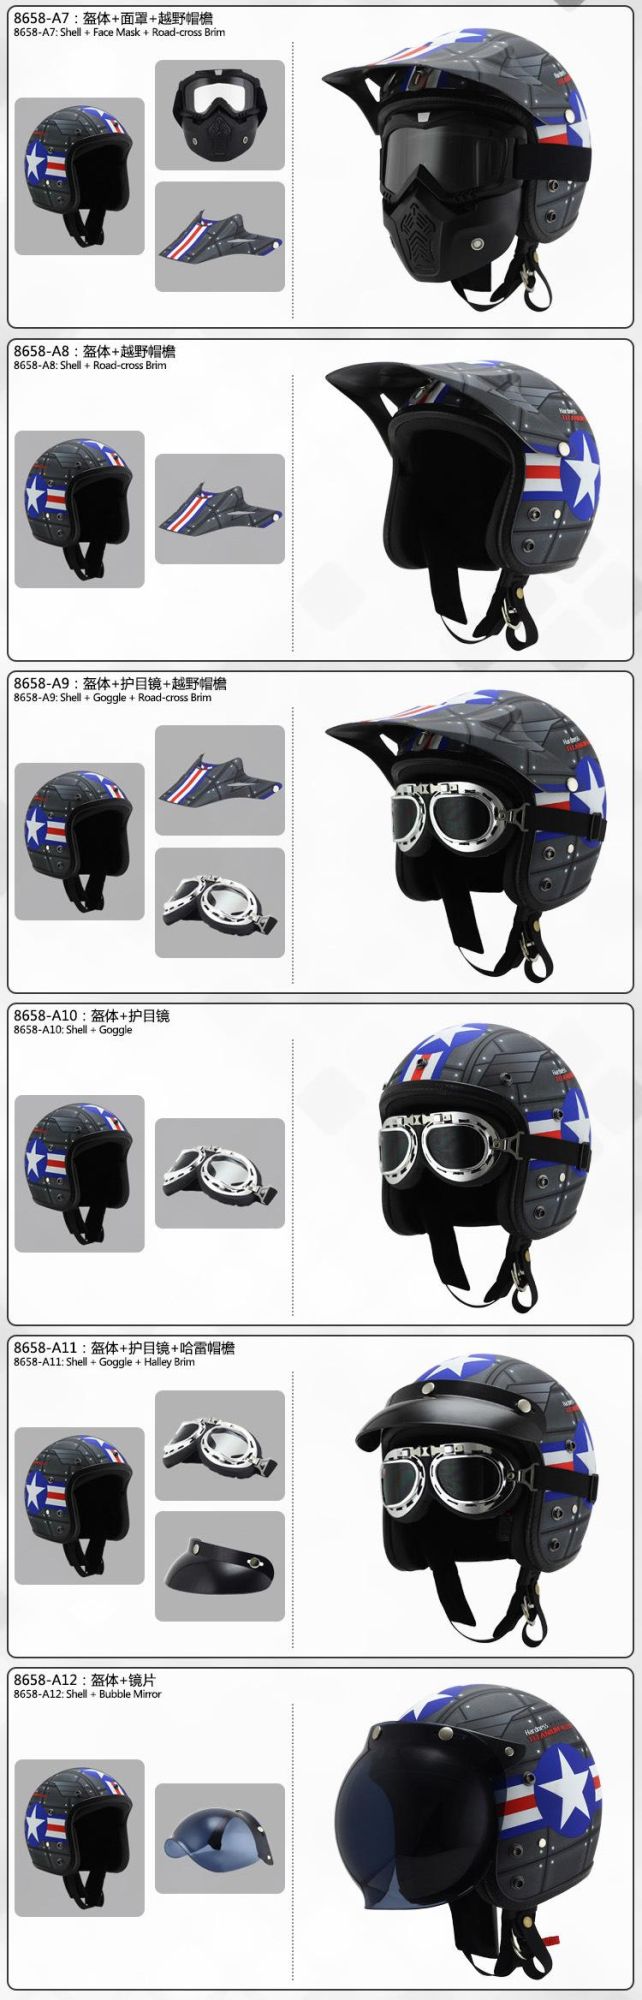 Vintage Helmet for Motorcycles